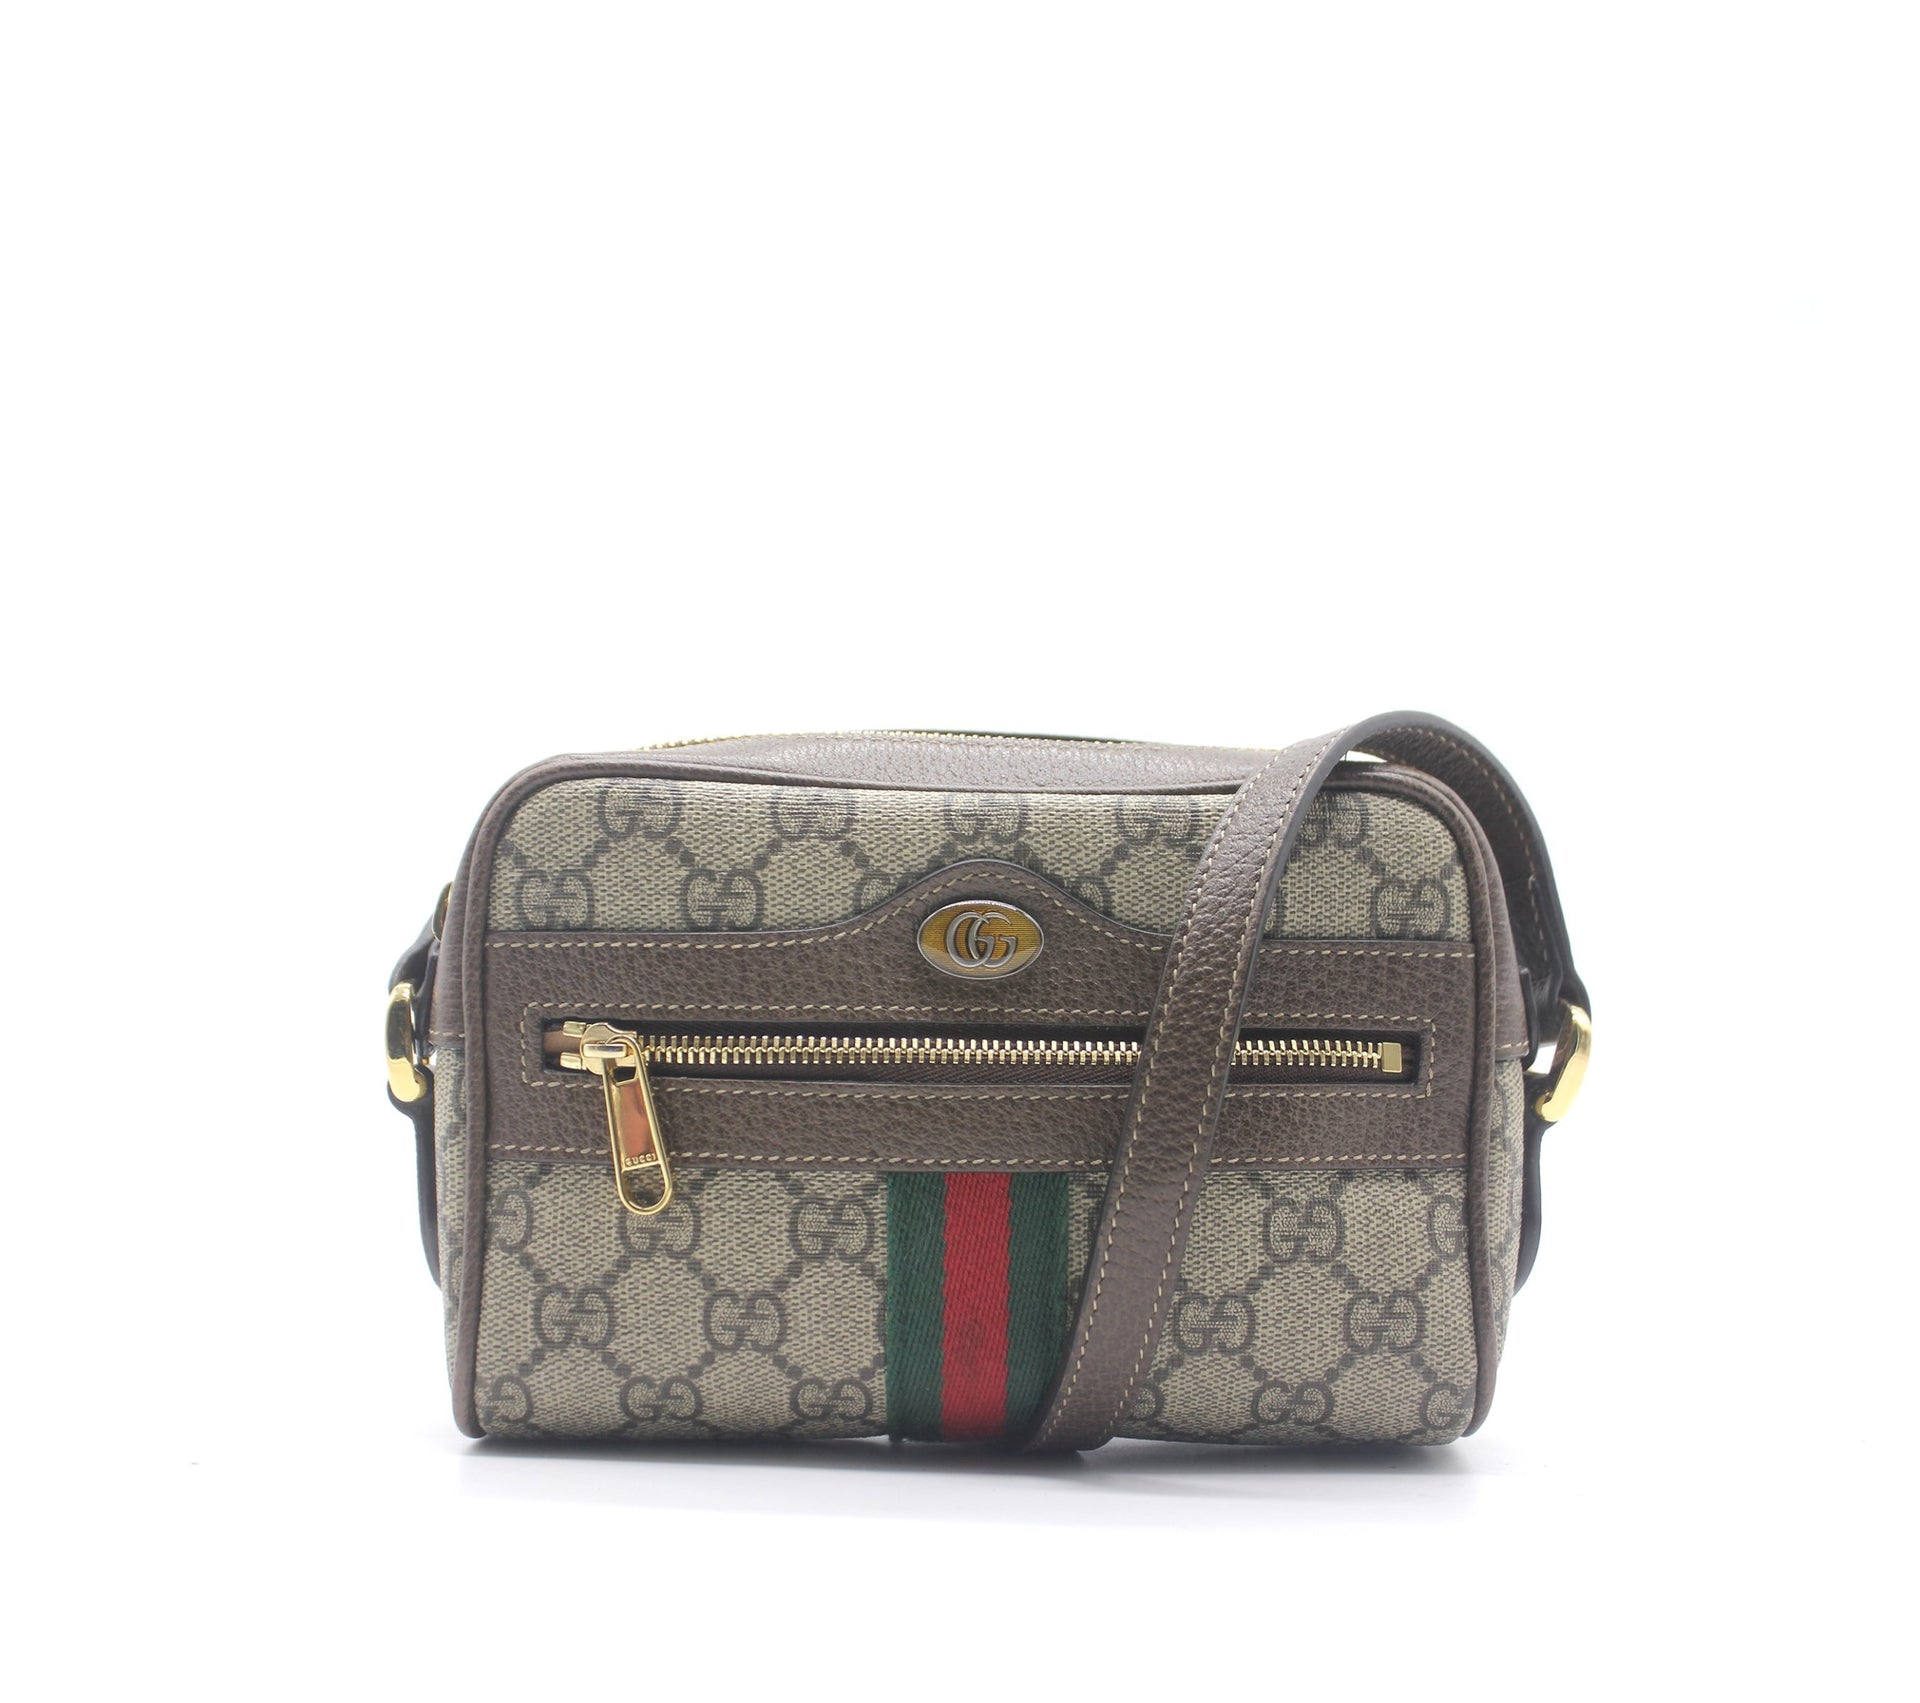 Gucci Ophidia GG Supreme mini bag